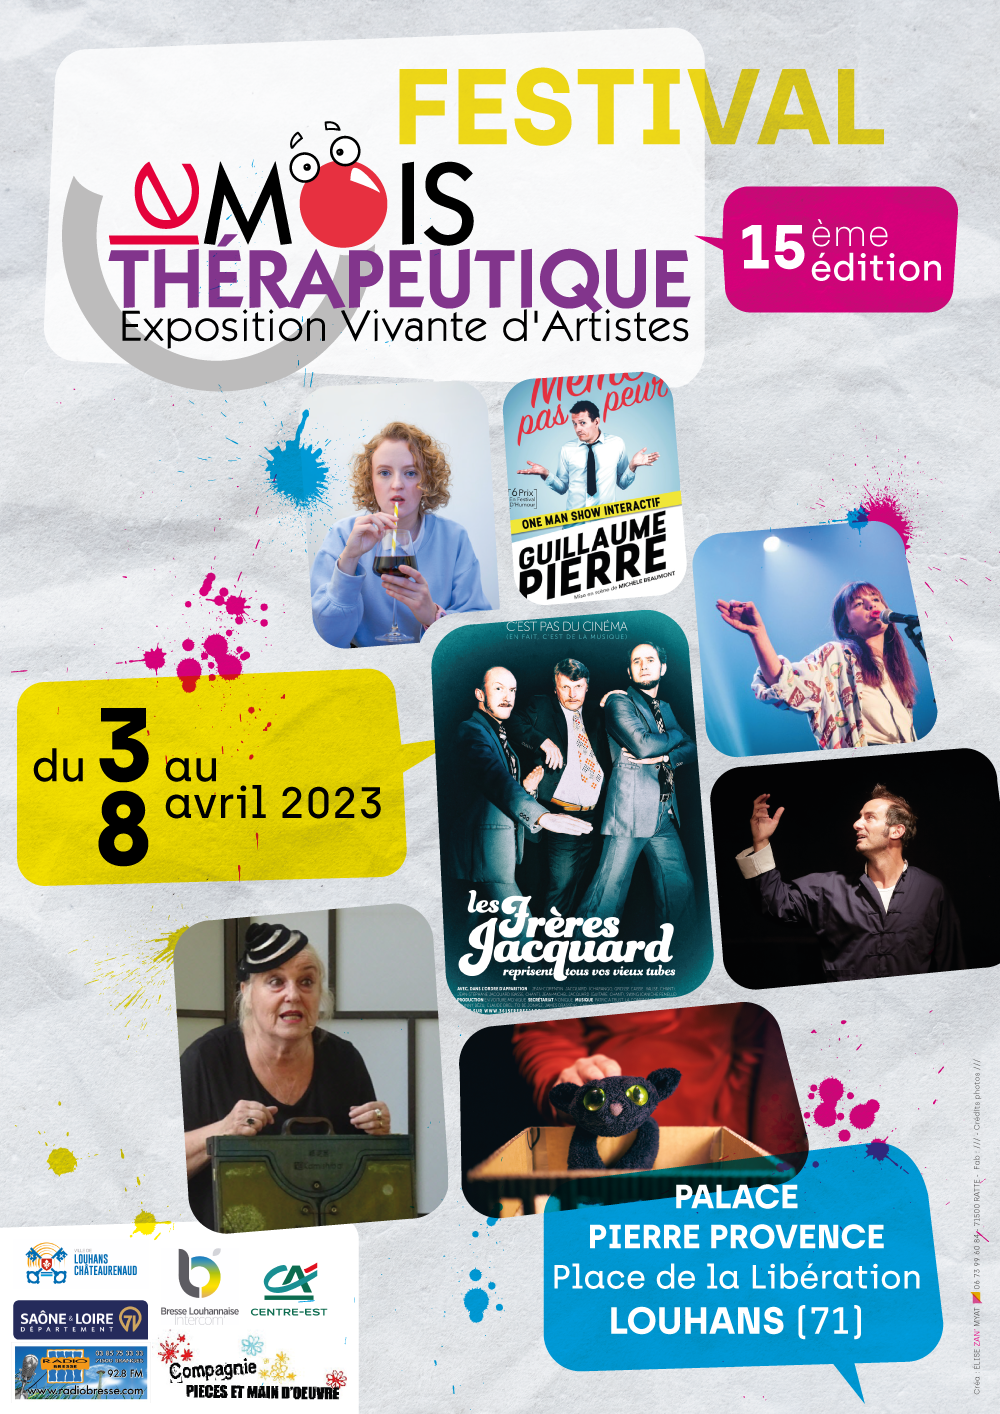 15ème édition du Festival "Le Mois thérapeutique" à Louhans. Réserver vos places dès à présent !